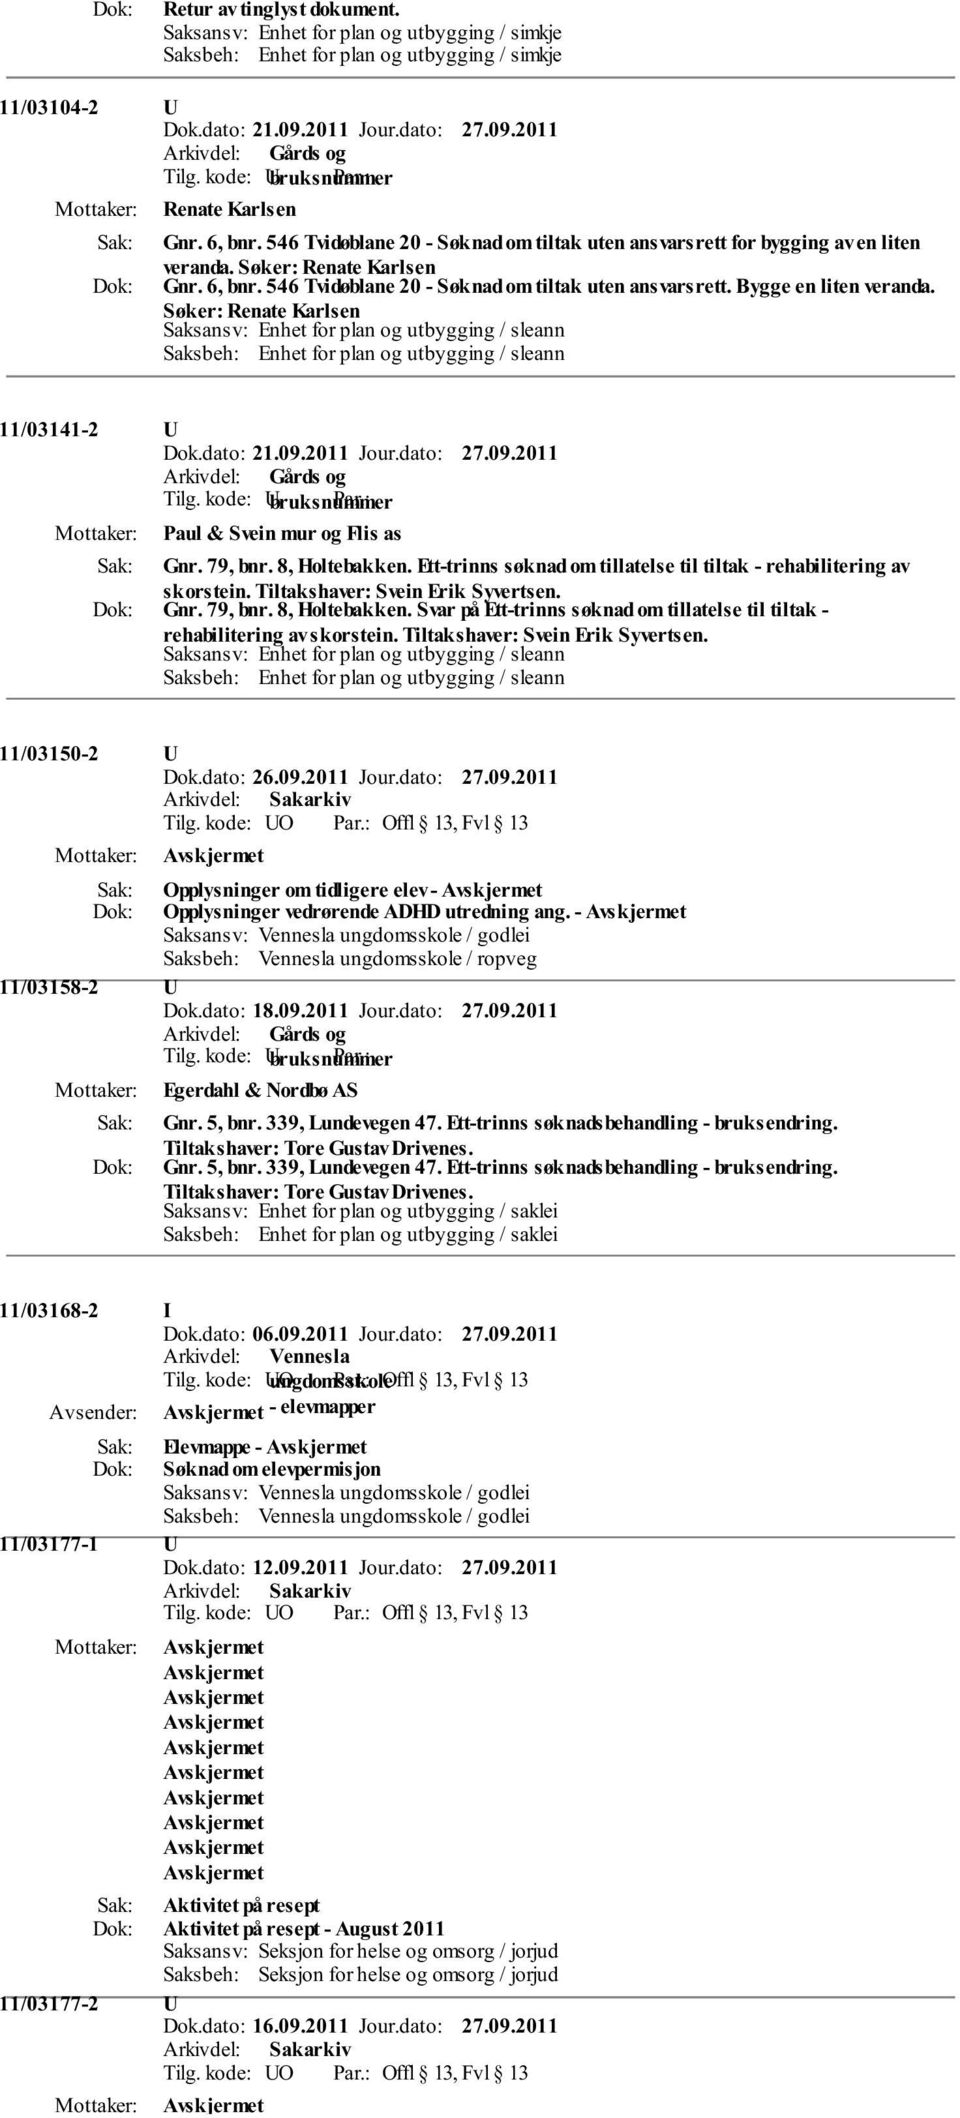 Søker: Renate Karlsen Saksansv: Enhet for plan og utbygging / sleann Saksbeh: Enhet for plan og utbygging / sleann 11/03141-2 U Dok.dato: 21.09.2011 Jour.dato: 27.09.2011 Paul & Svein mur og Flis as Gnr.